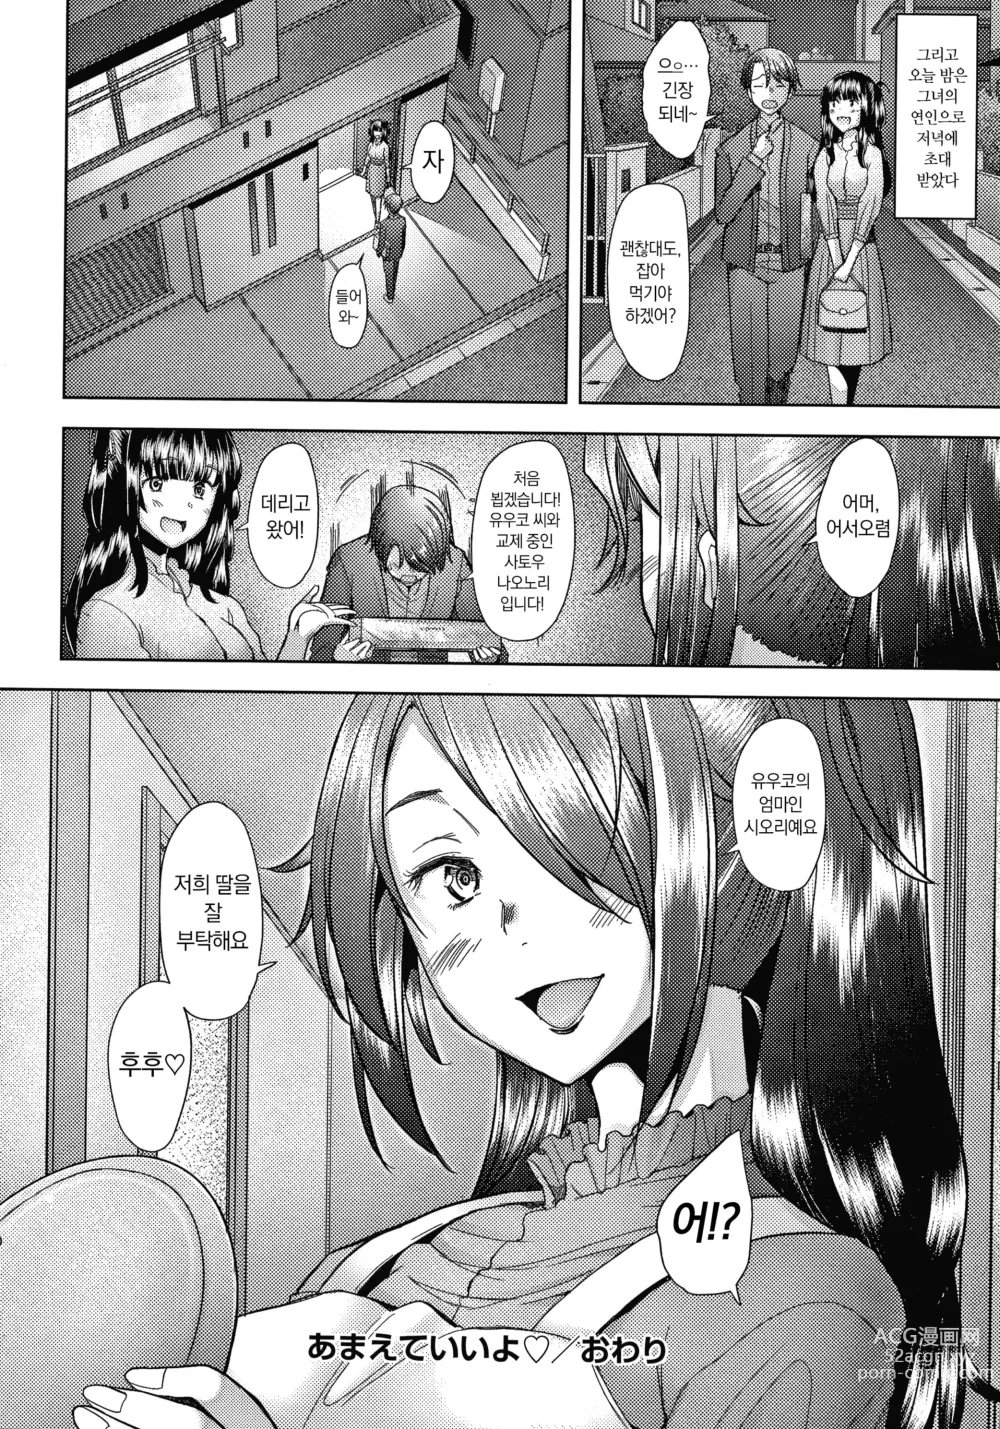 Page 195 of manga 유부녀도 사랑하고 싶어 ~노콘 수정으로 임신하고 싶은 유부녀들~